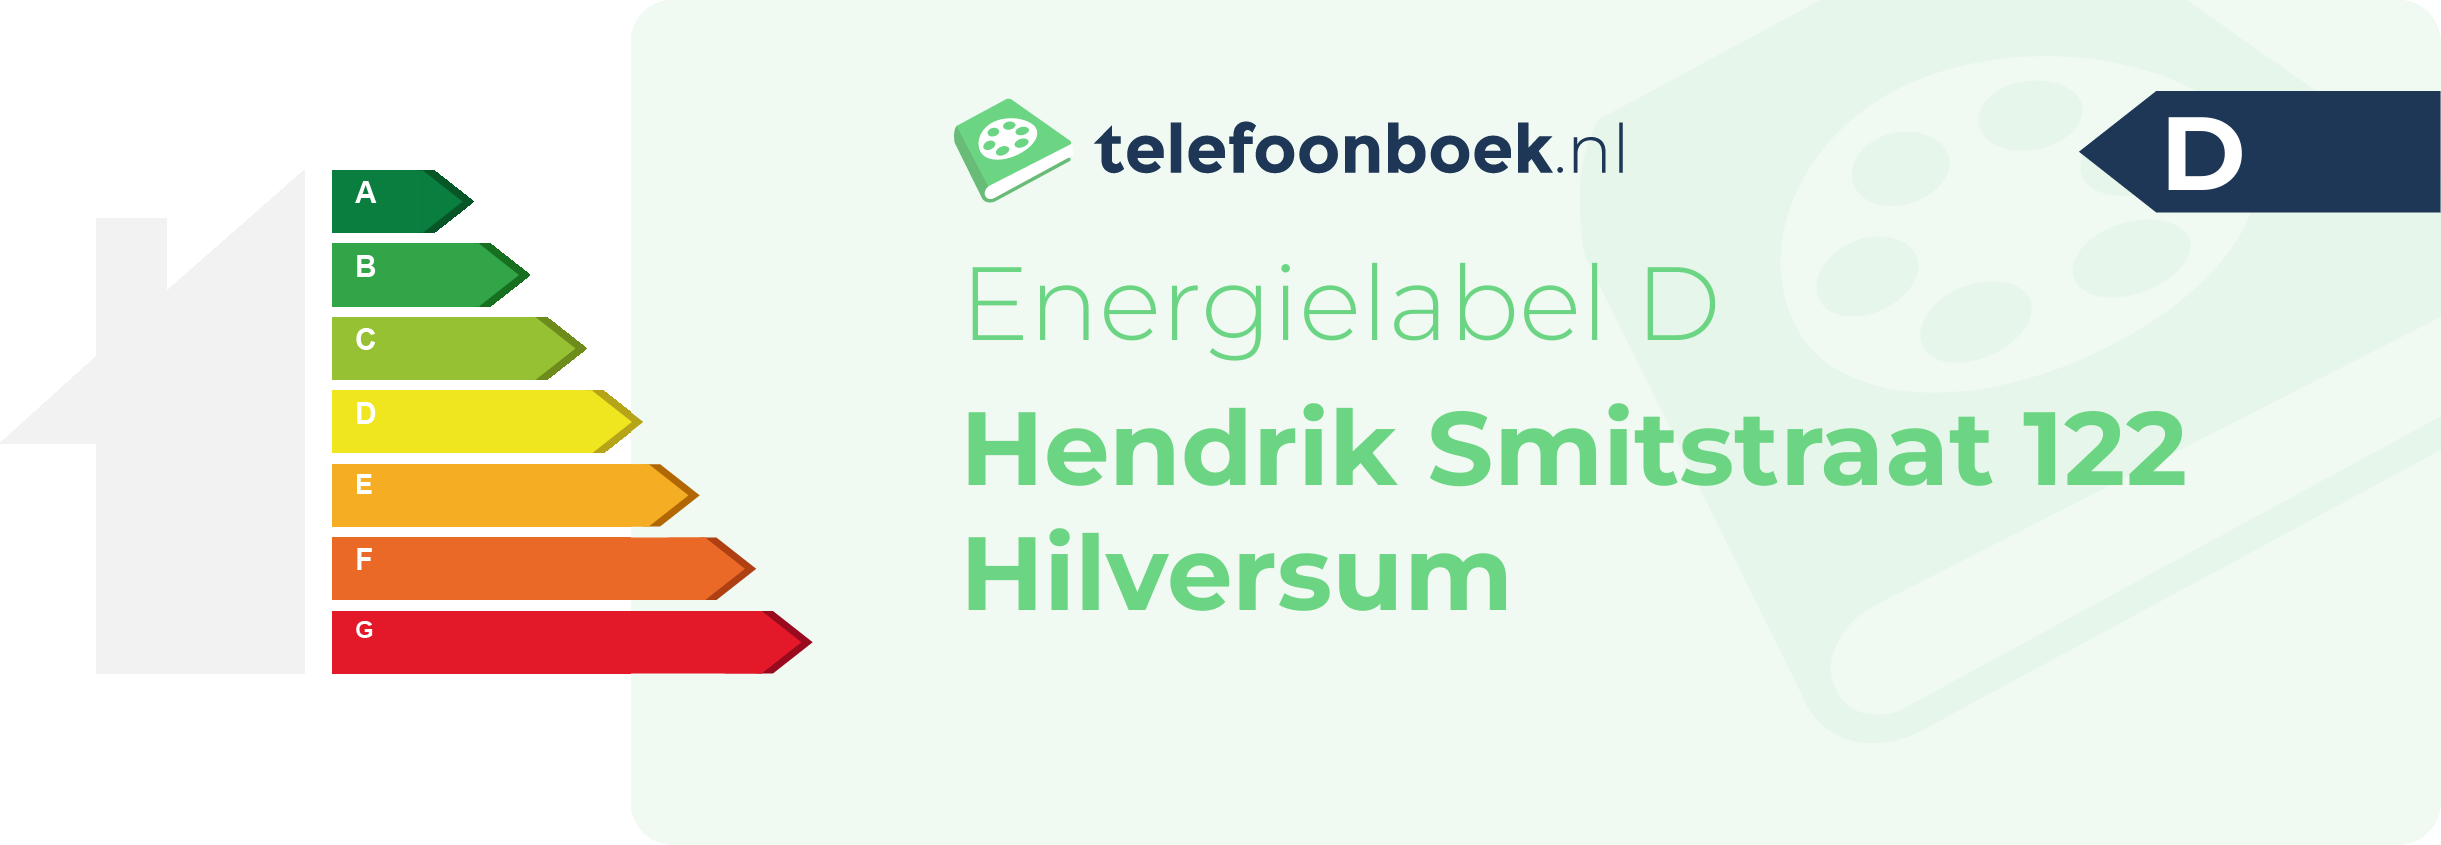 Energielabel Hendrik Smitstraat 122 Hilversum